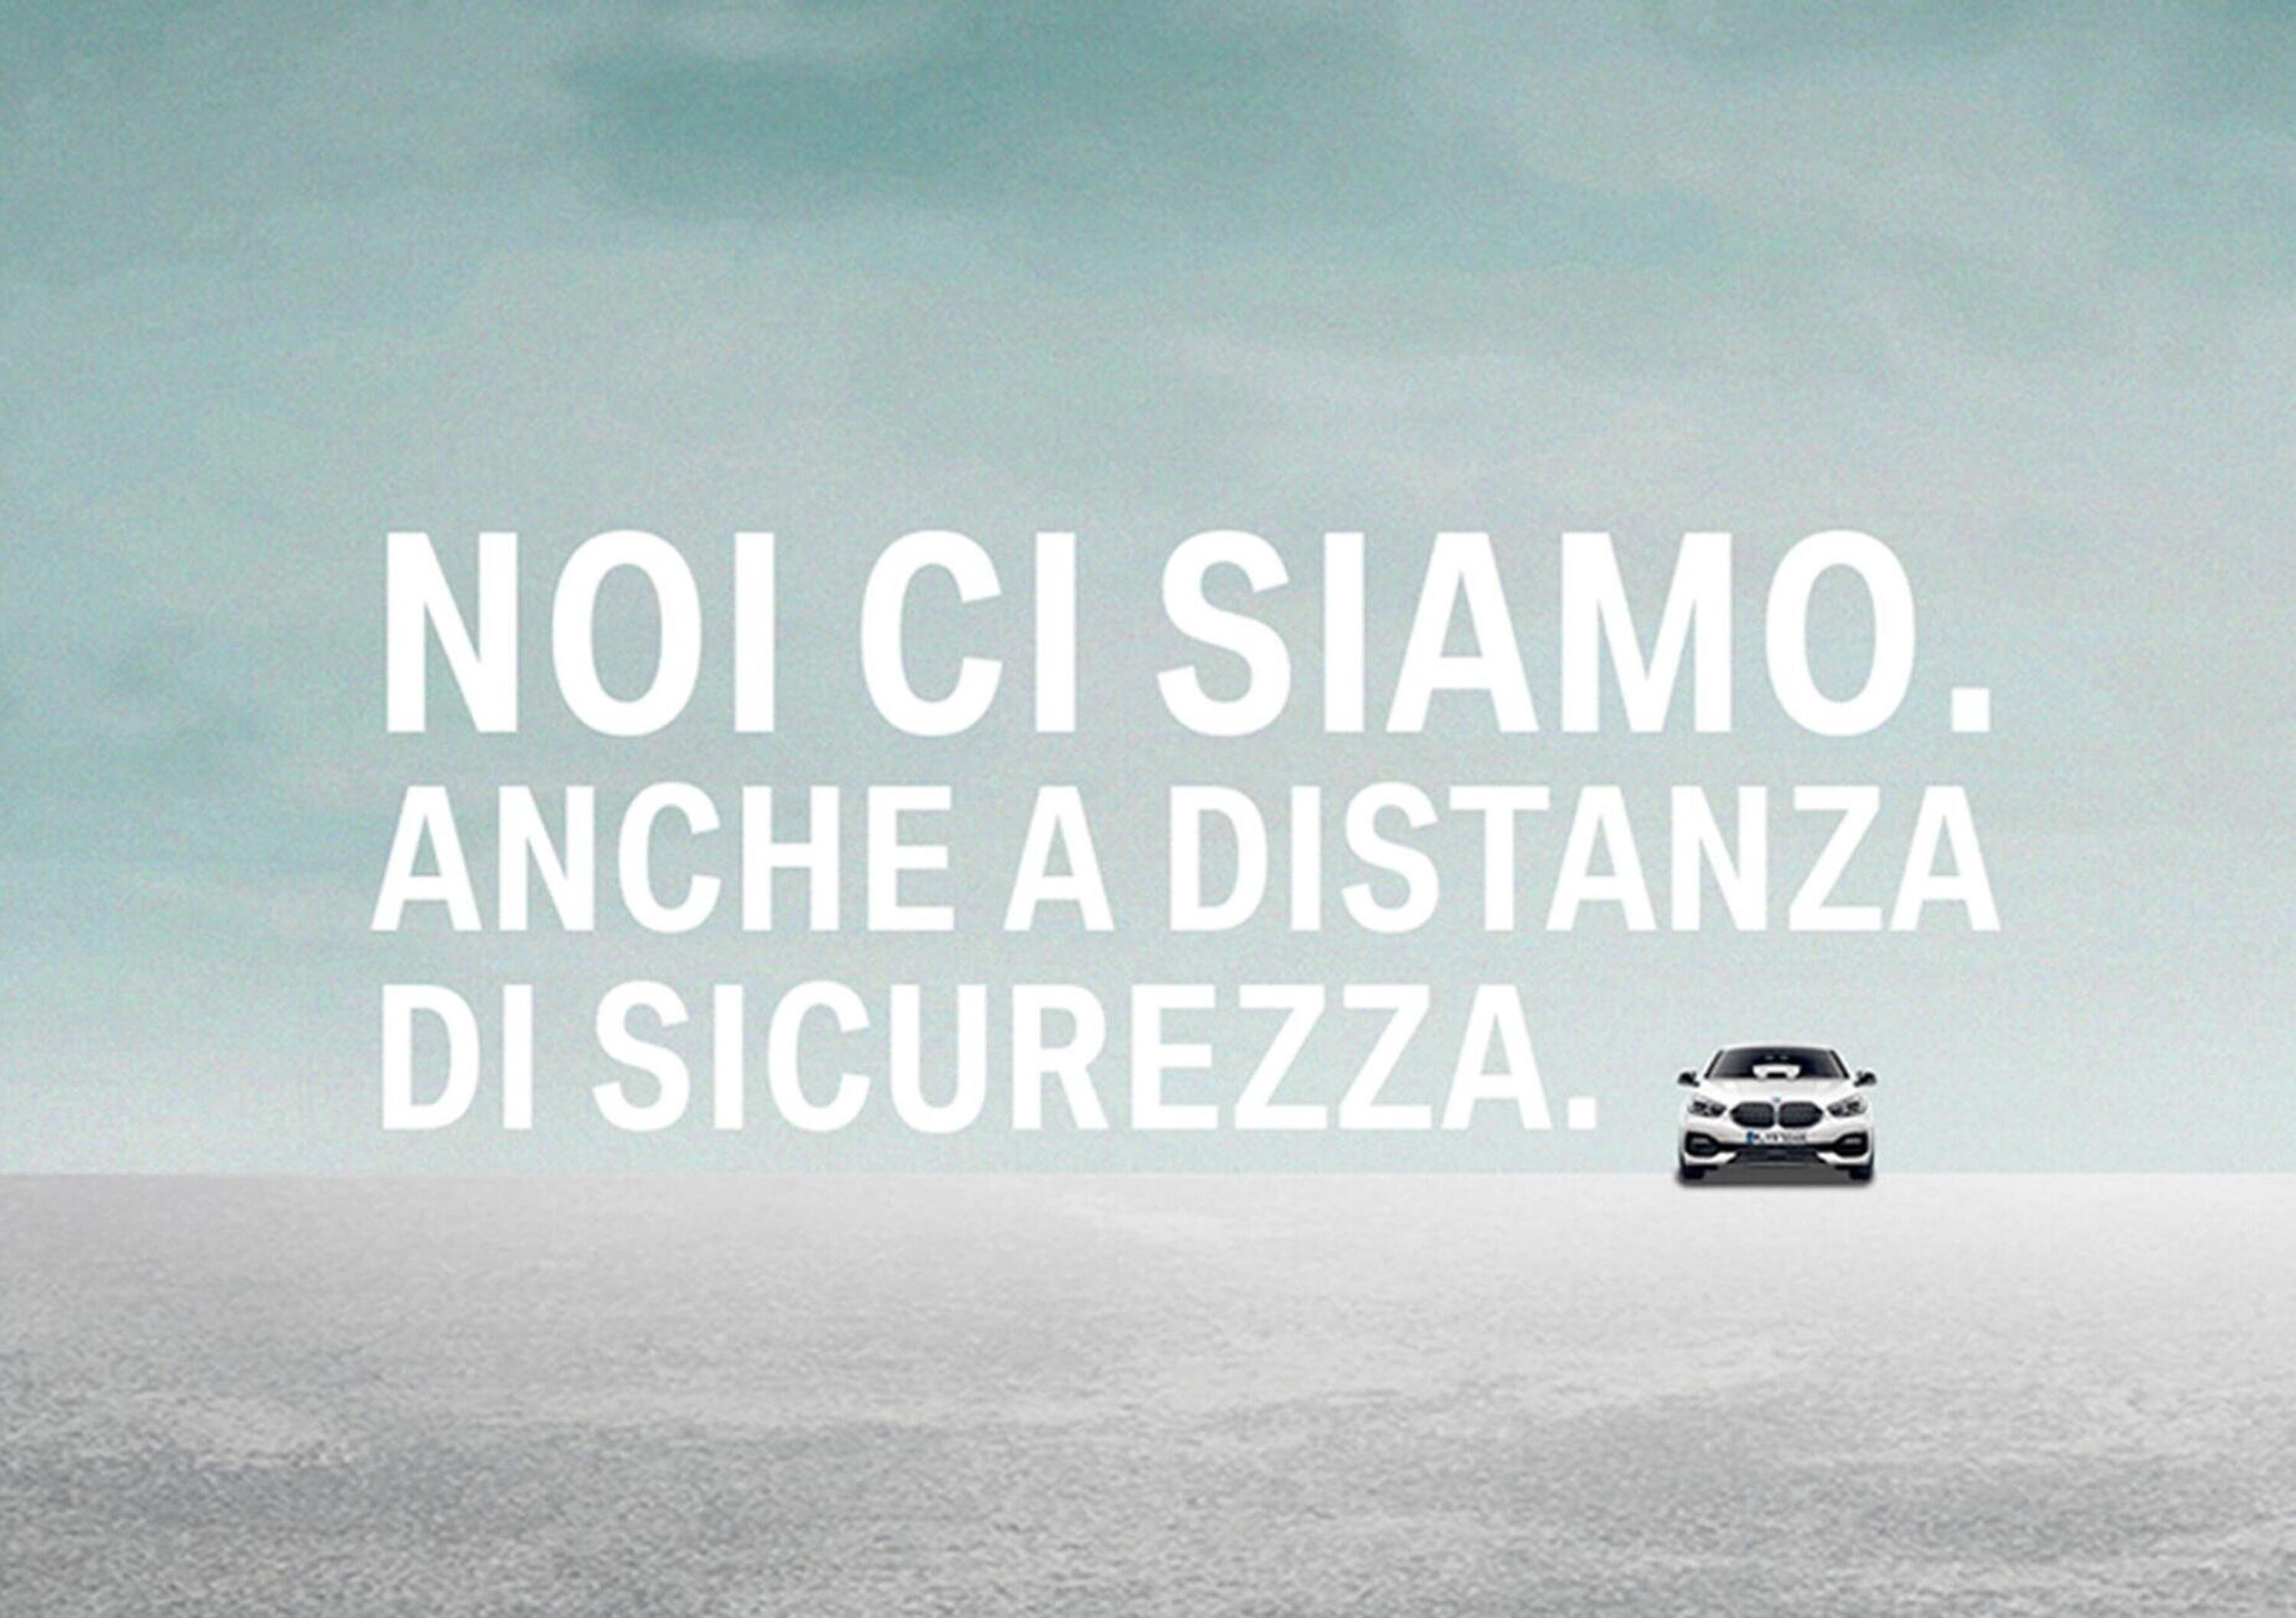 BMW, #InsiemePerRipartire: la campagna con Zanardi 